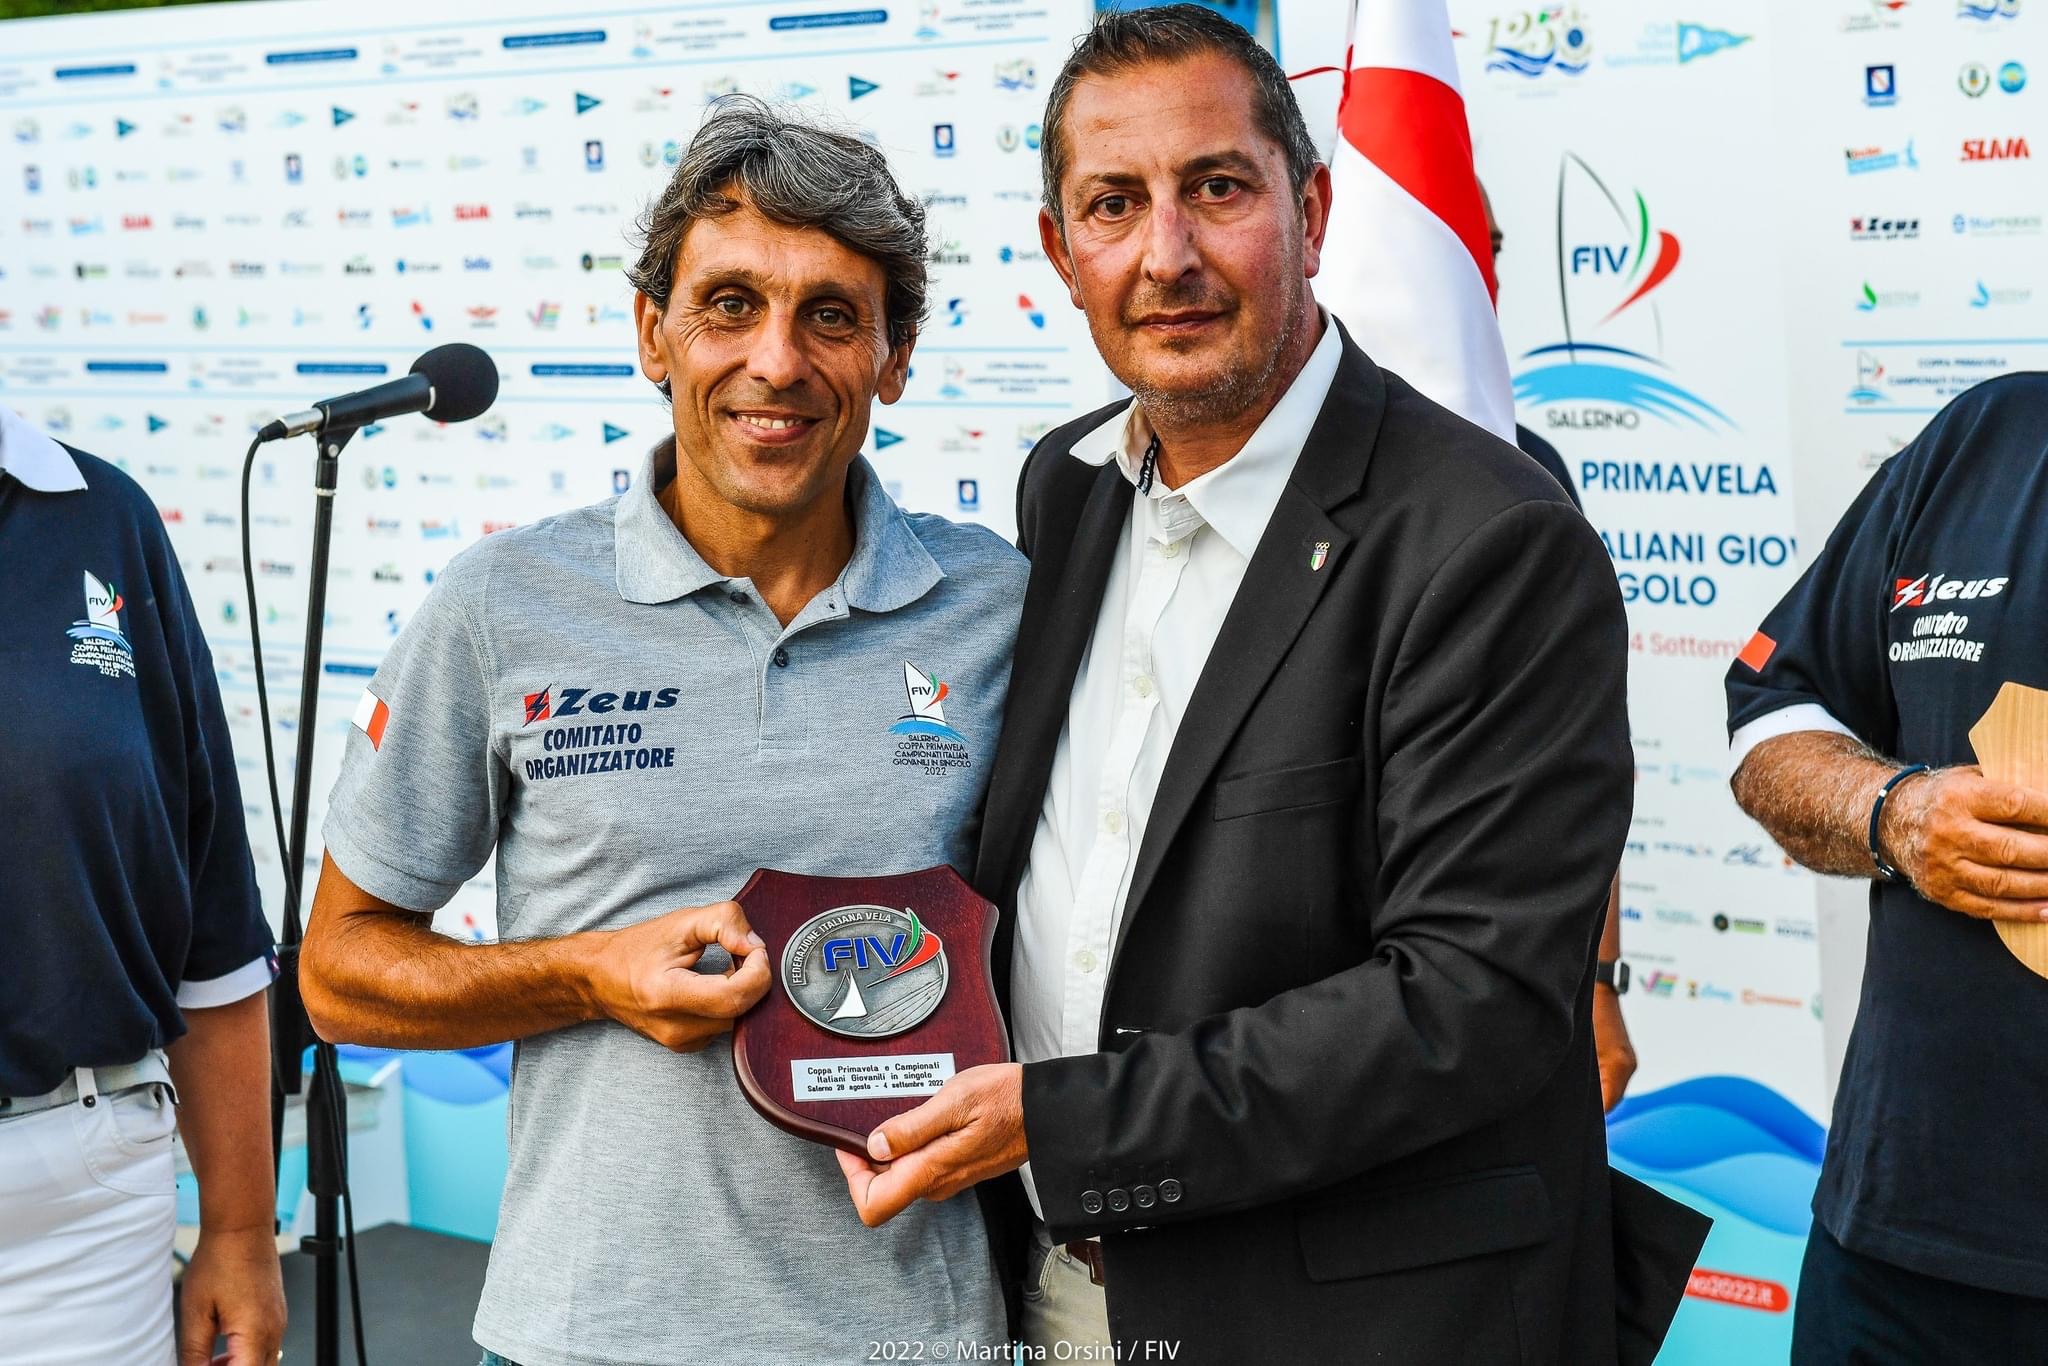 Coppa Primavela 2022: successi per i giovani atleti della Lega Navale Italiana